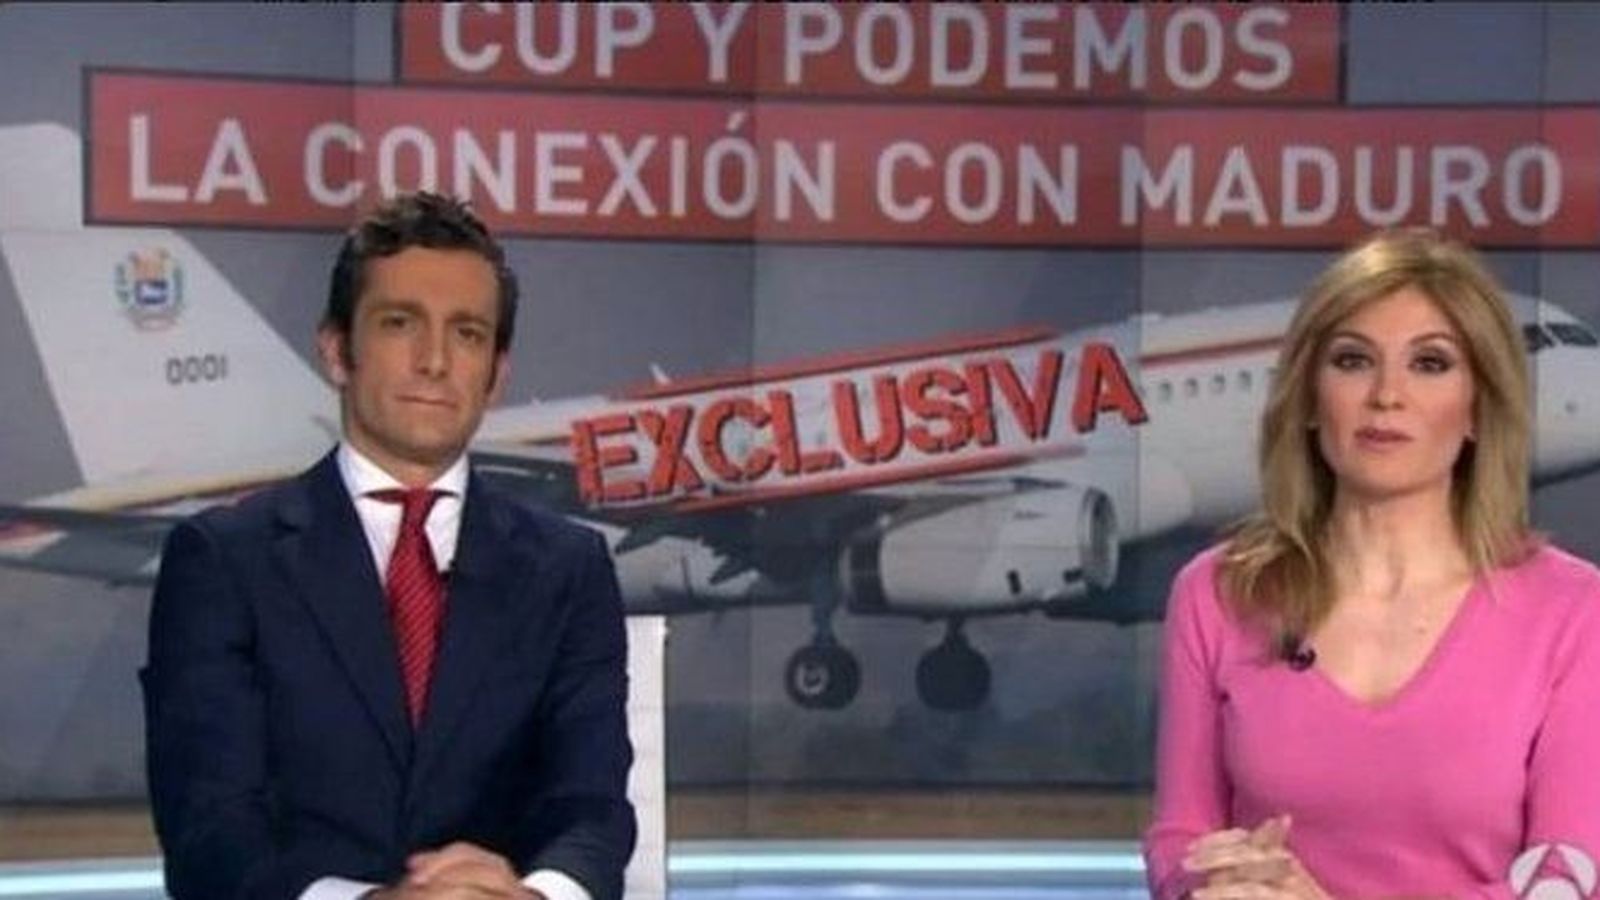 Foto: Periodistas de Antena 3 presentan una exclusiva sobre un viaje de la CUP y Podemos a Venezuela.